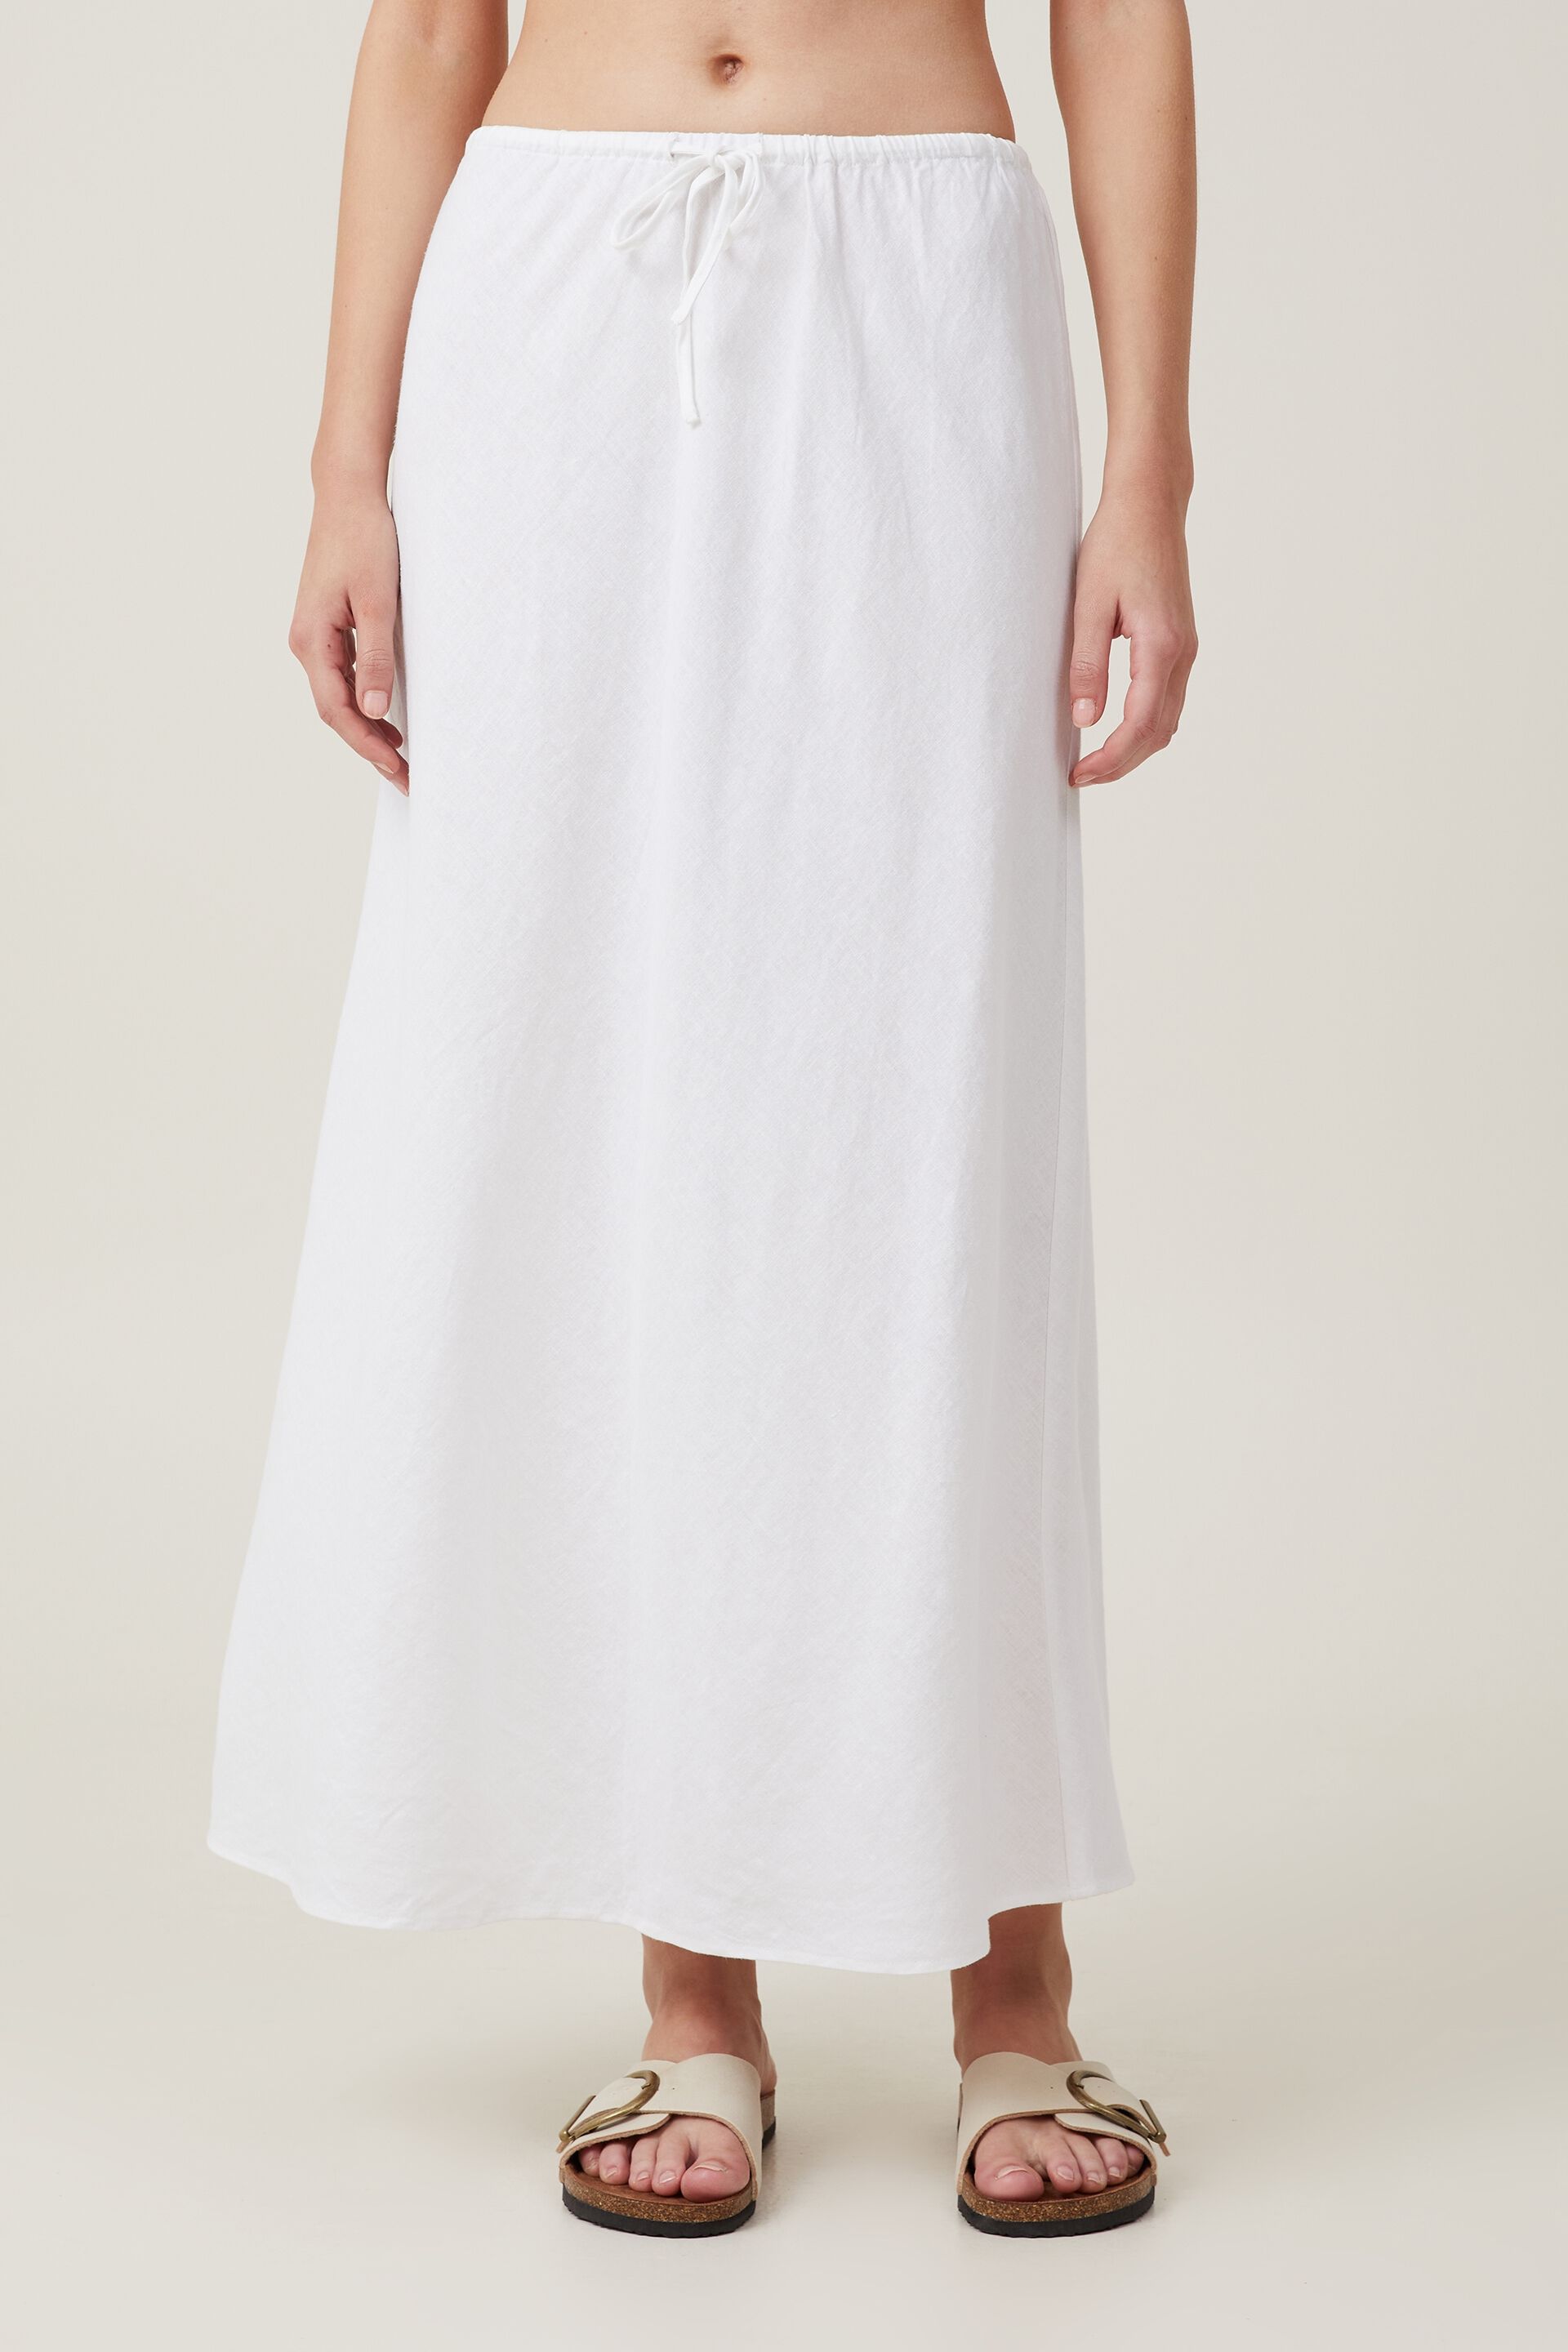 Buy mybody Women Cotton regular 34 Slip maxi Skirt  Ankle Length  petticoat Whiteknee length M Online at Best Prices in India  JioMart